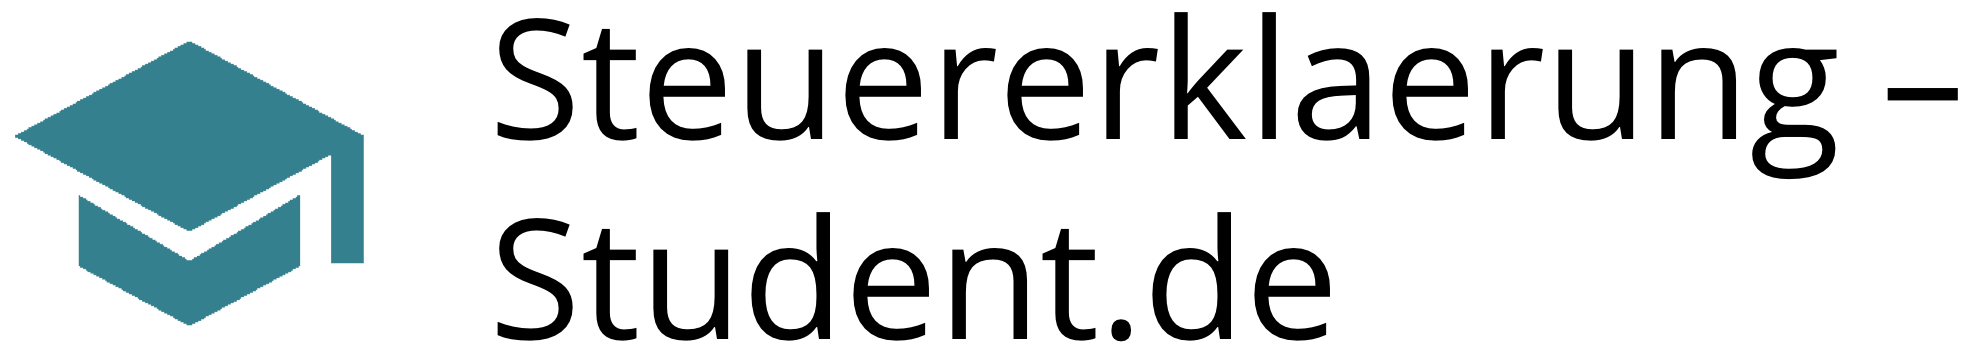 Logo Steuererklaerung-Student.de